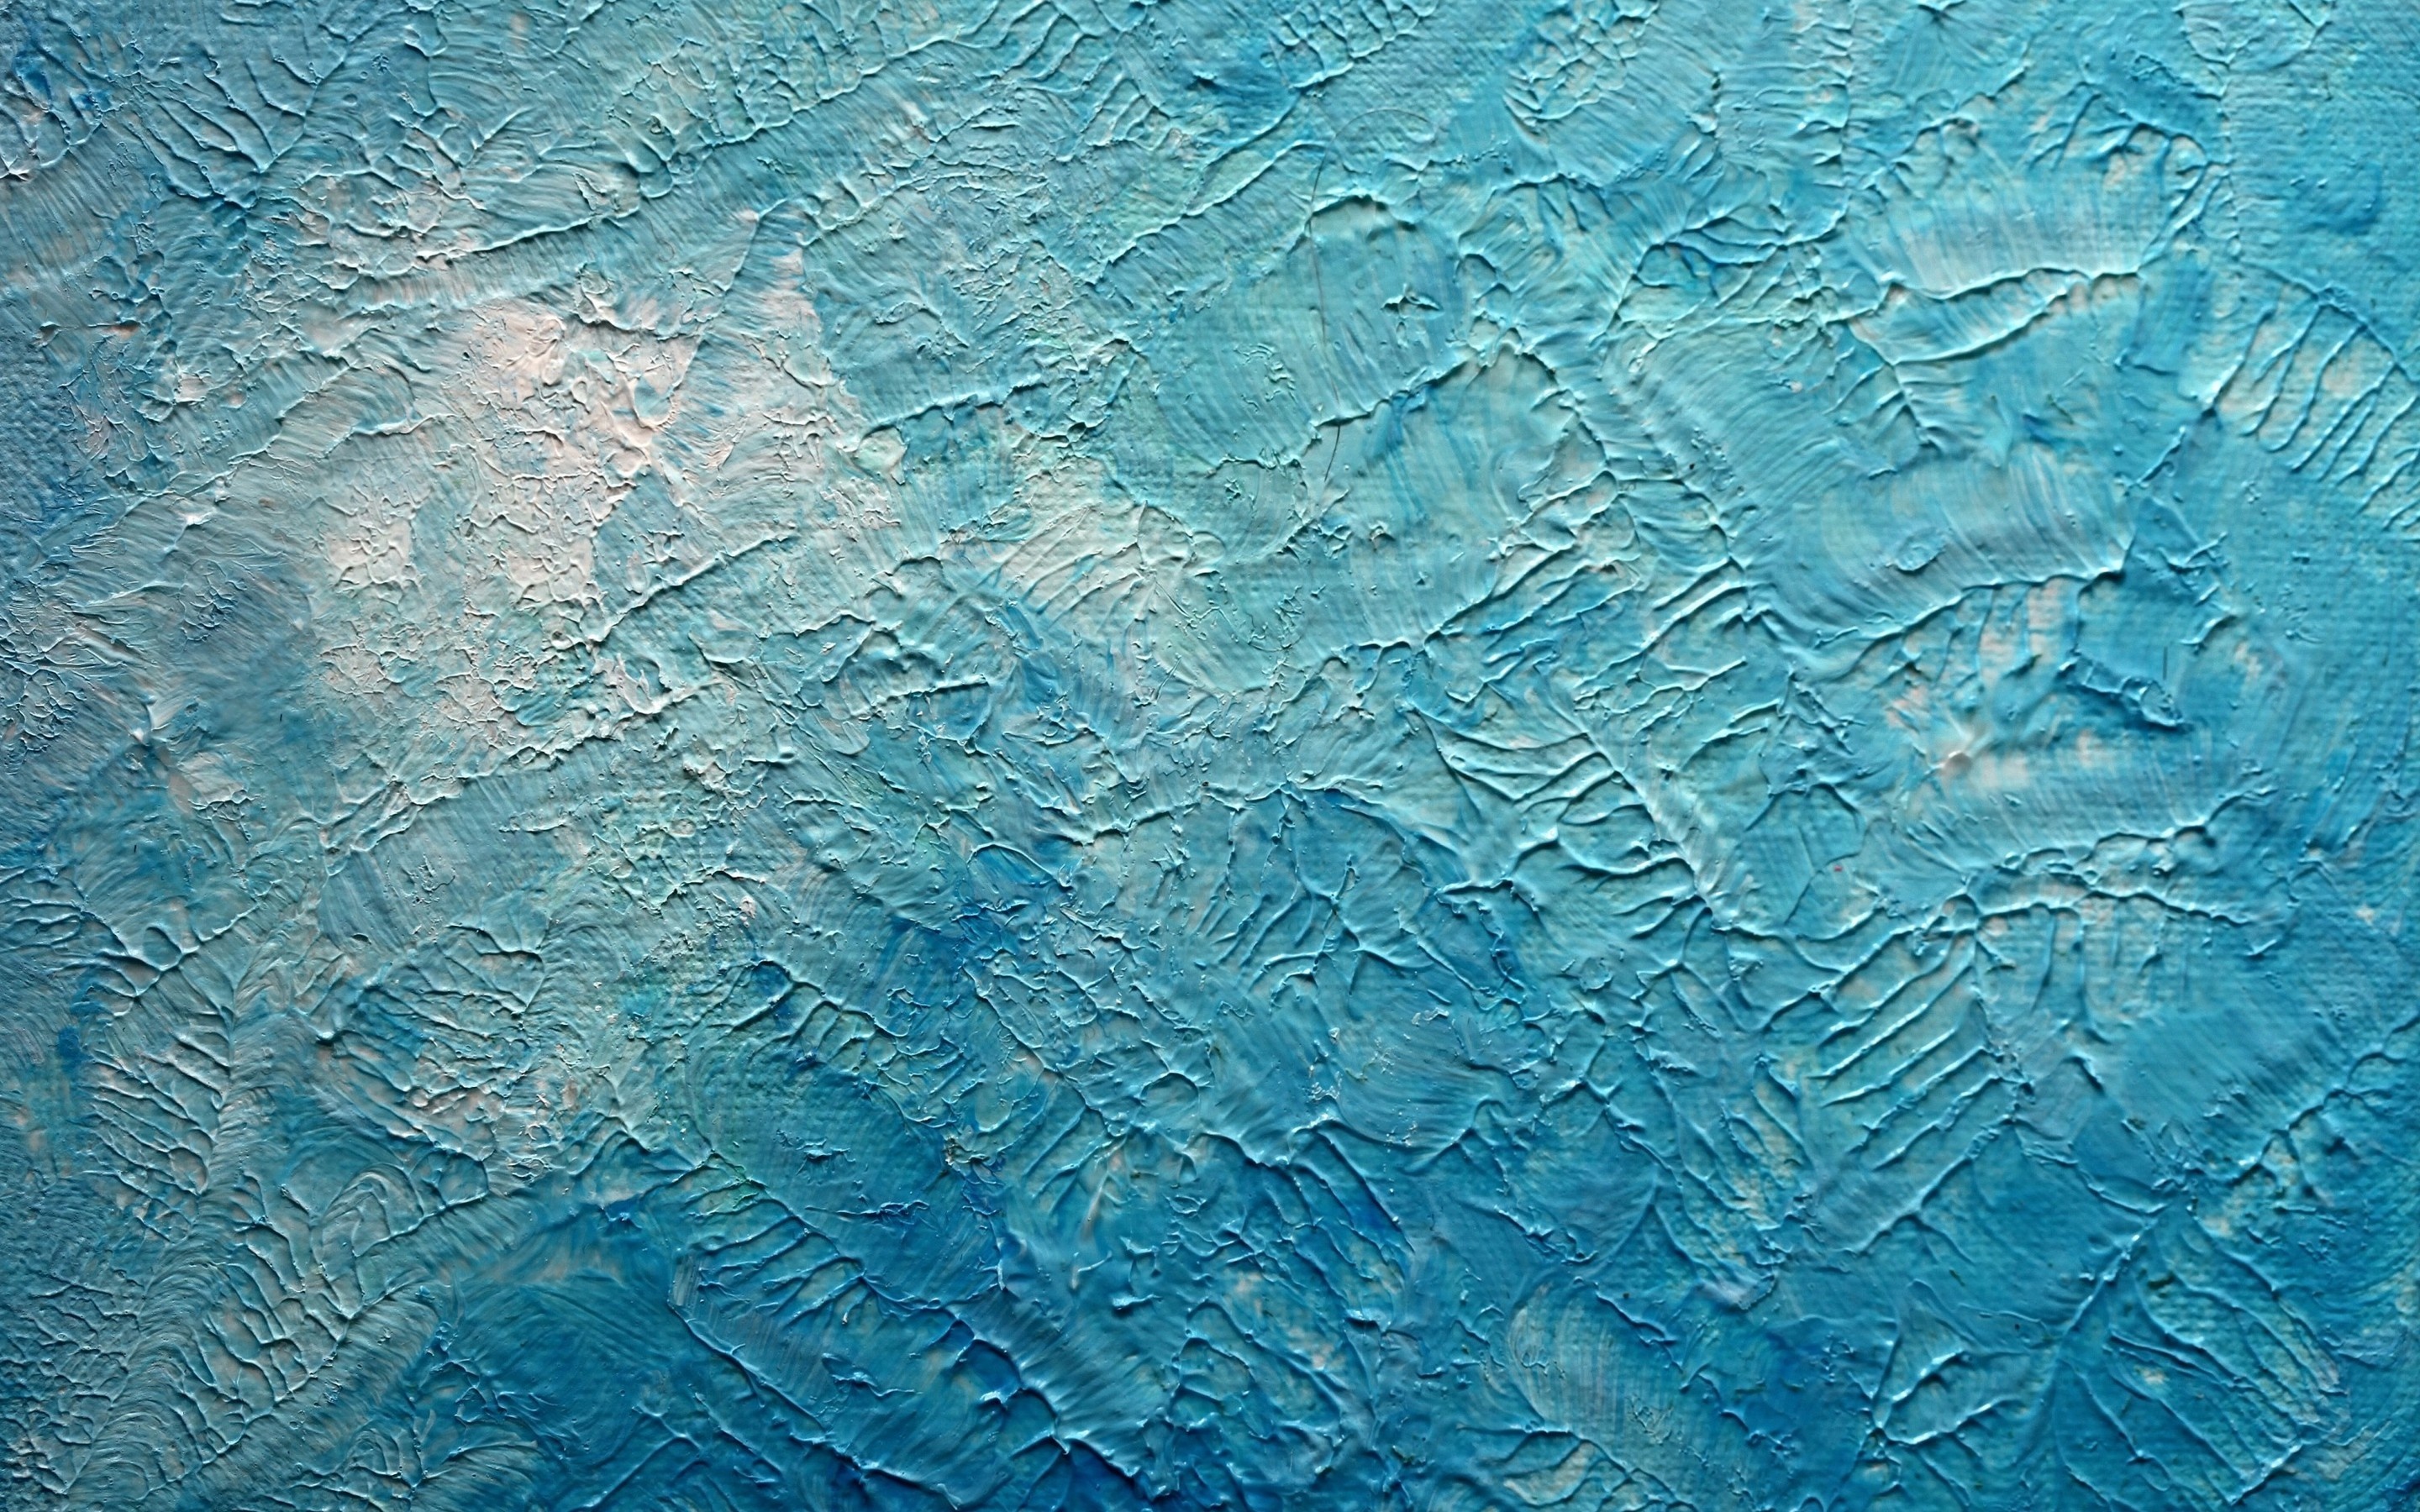 Blue textured wallpaper